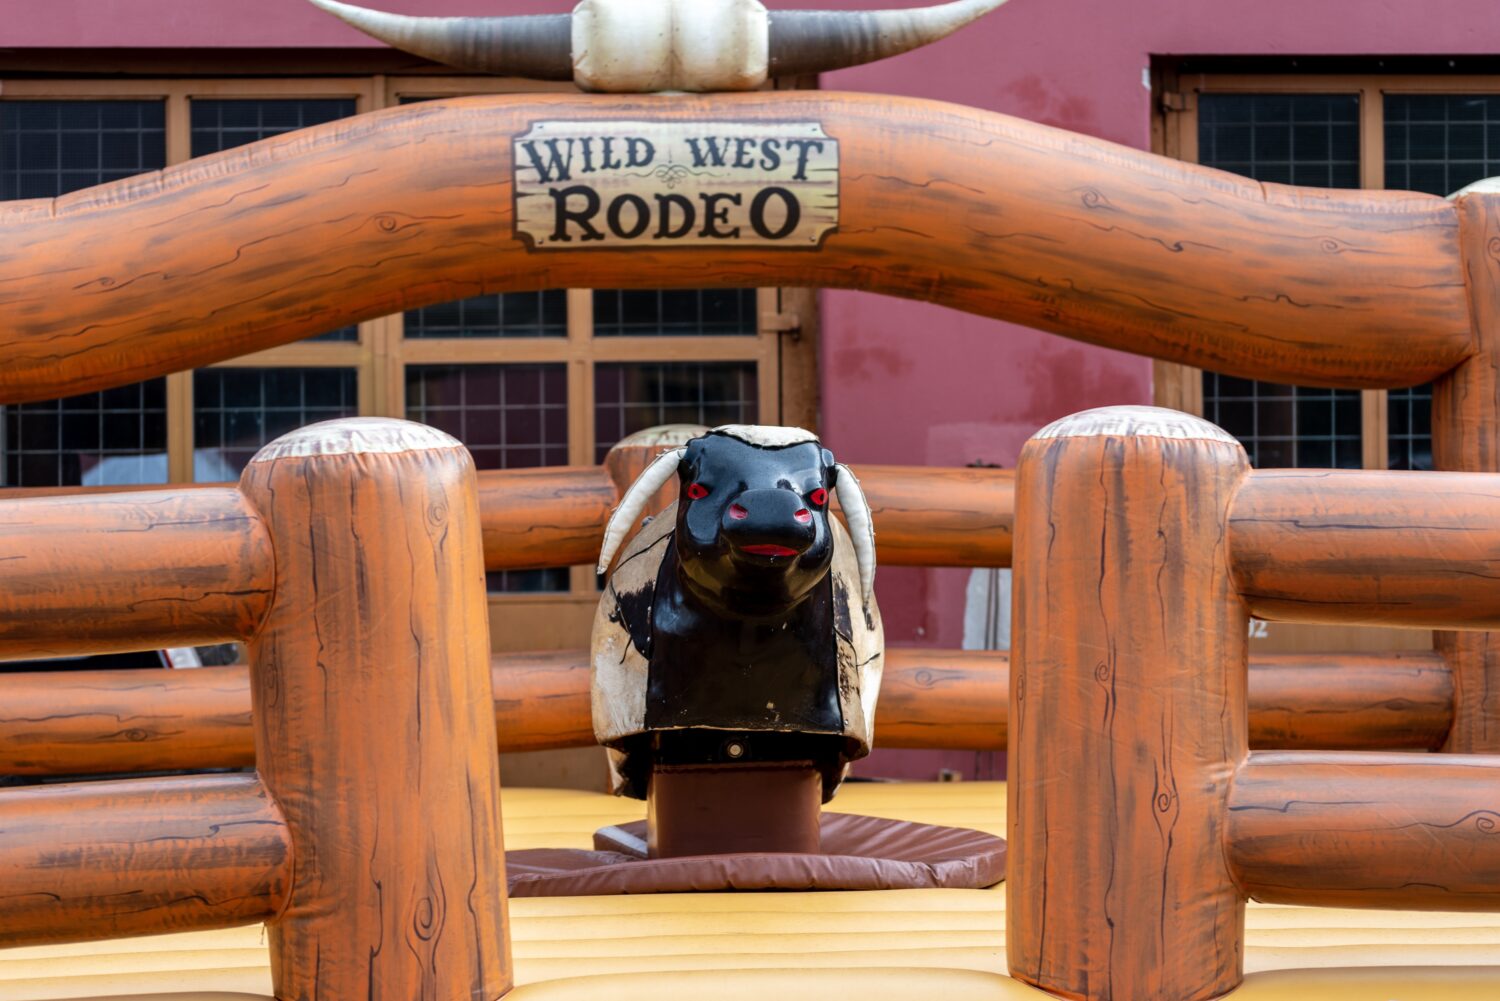 Grande macchina meccanica da rodeo per cavalcare un toro in legno.